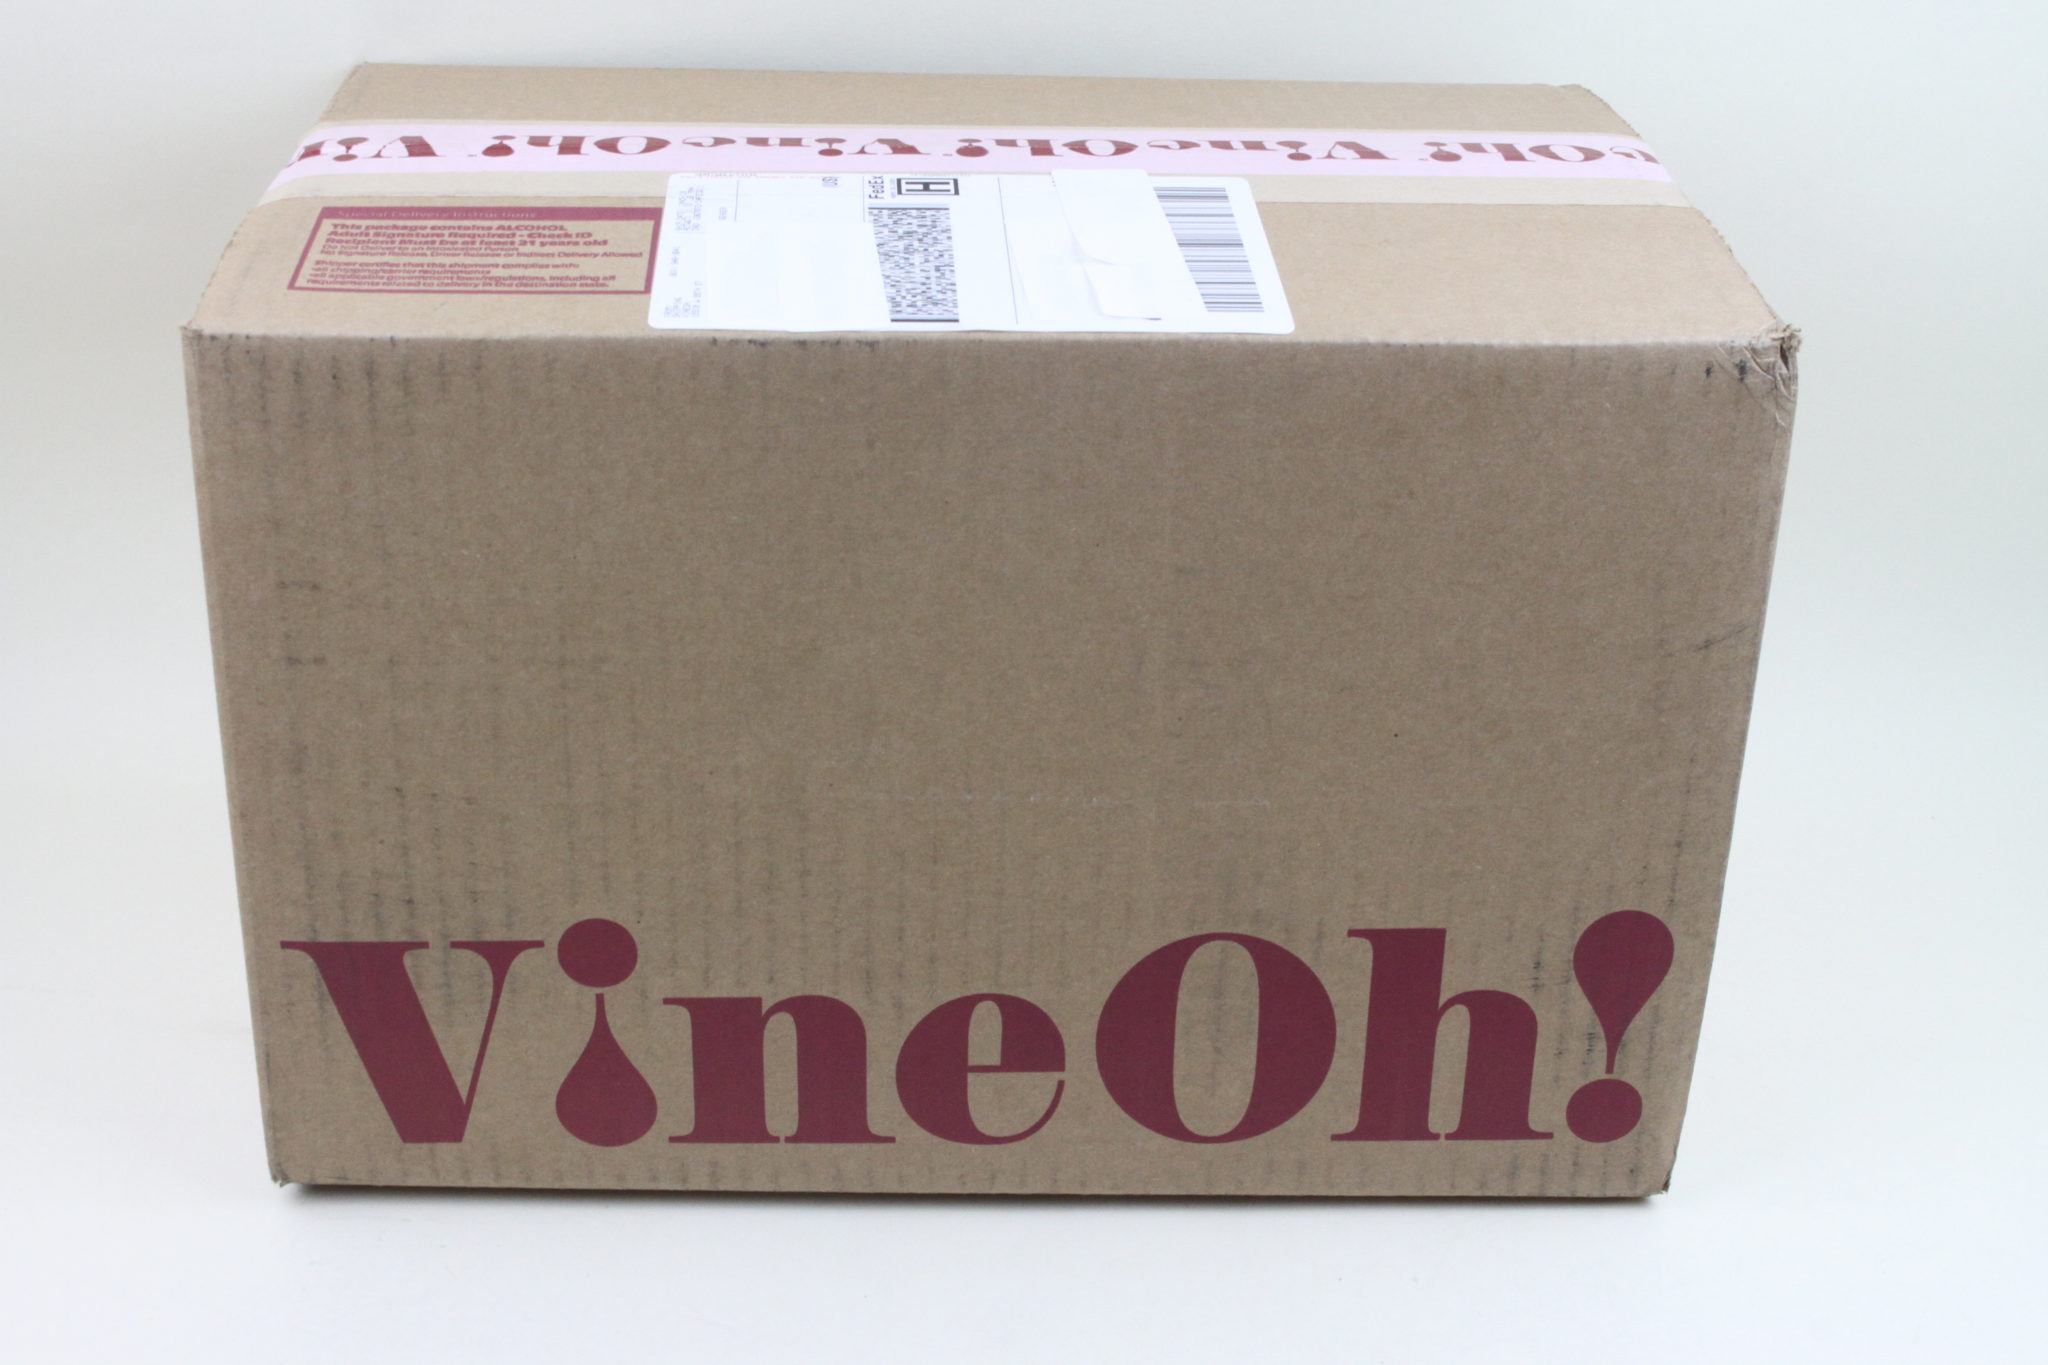 Vine Oh! - Oh! Ho Ho! Box Review